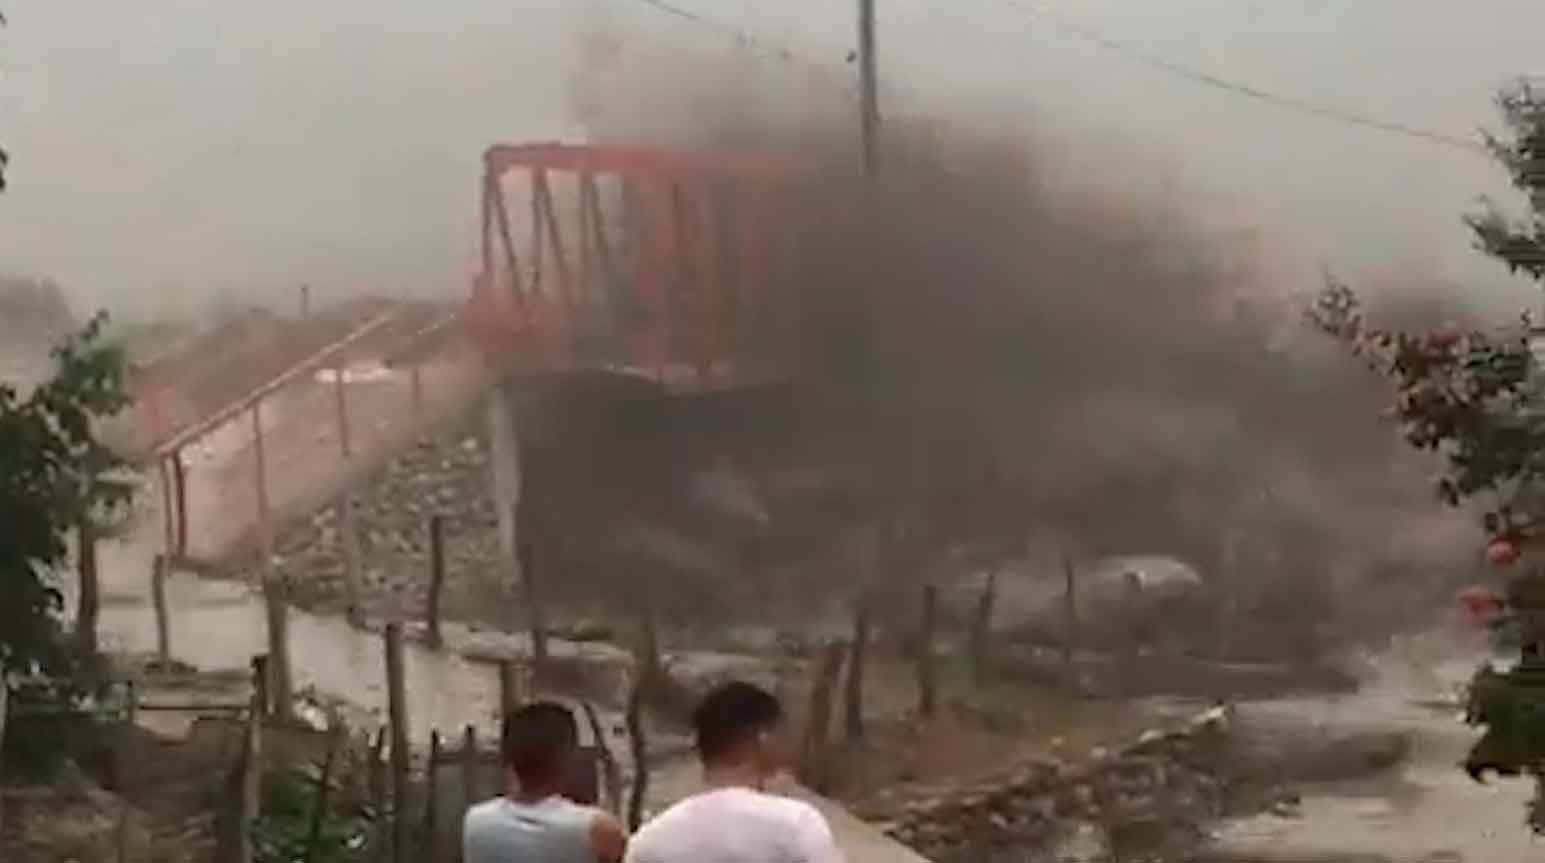 Vídeo mostra o momento em que avalanche gigante de lama arrasta ponte na Argentina. Foto e vídeos: Reprodução twitter @Top_Disaster